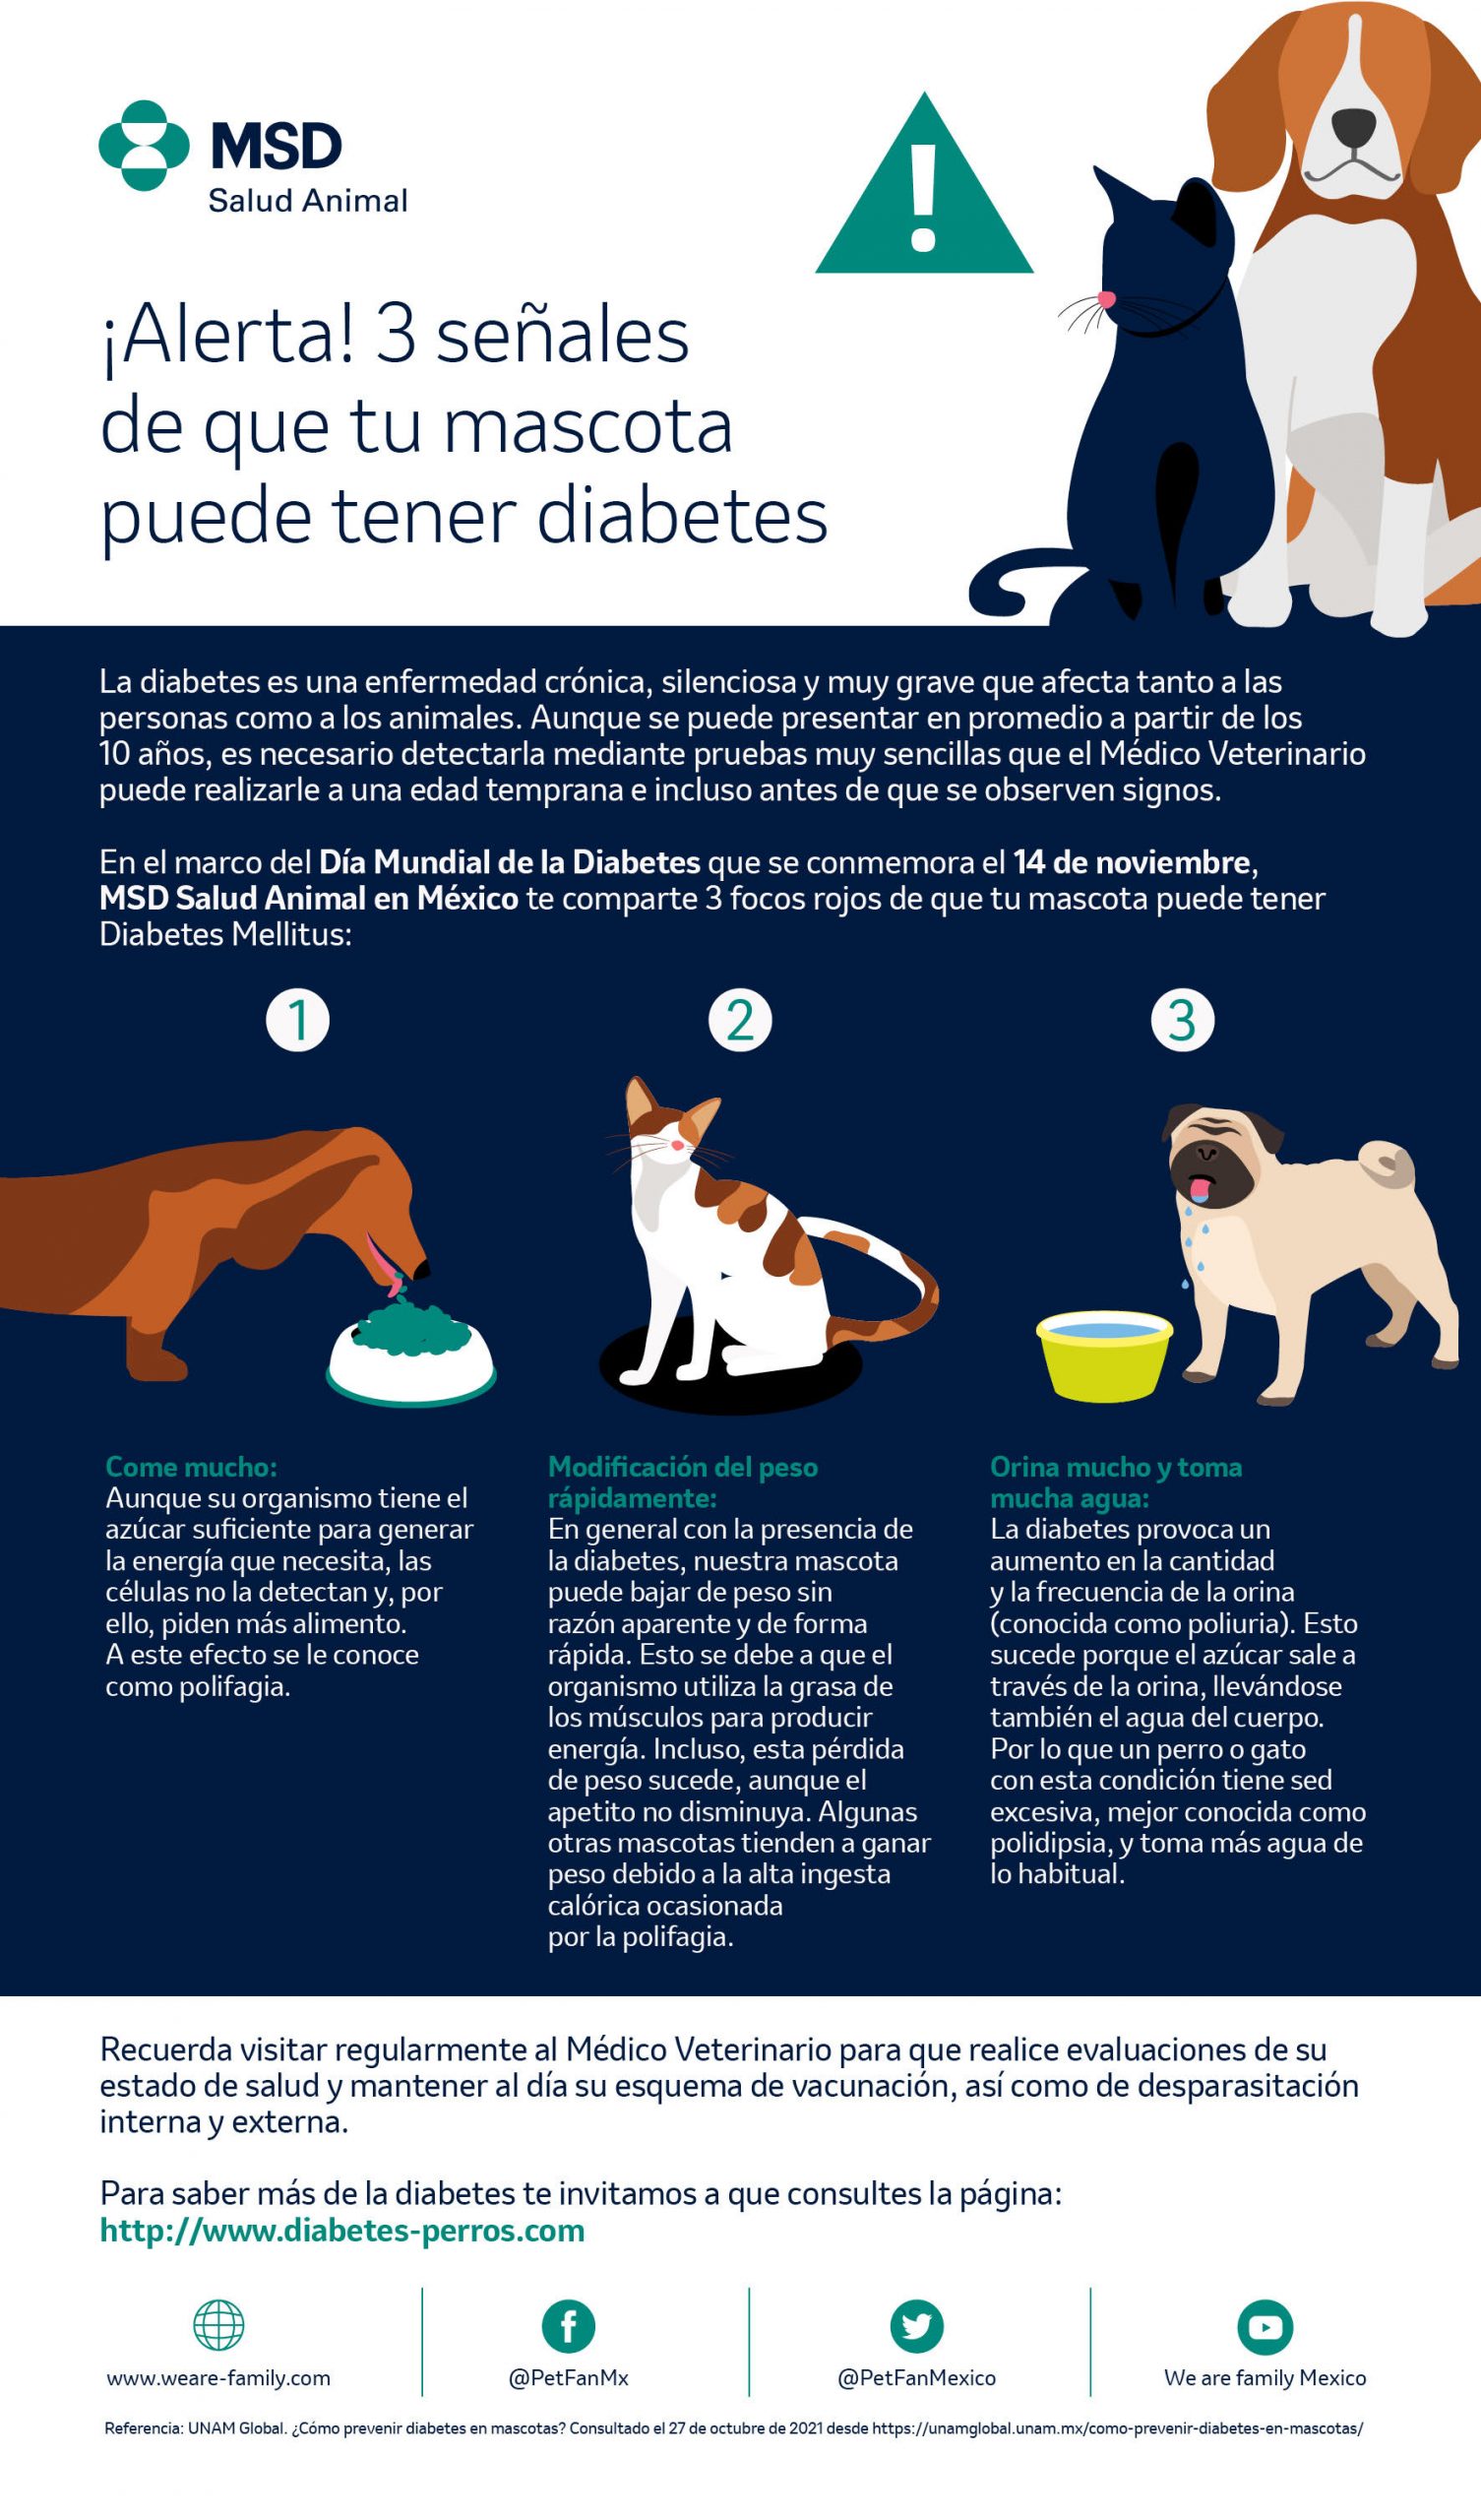 ¿Sabías que tu mascota puede estar en riesgo de desarrollar diabetes?